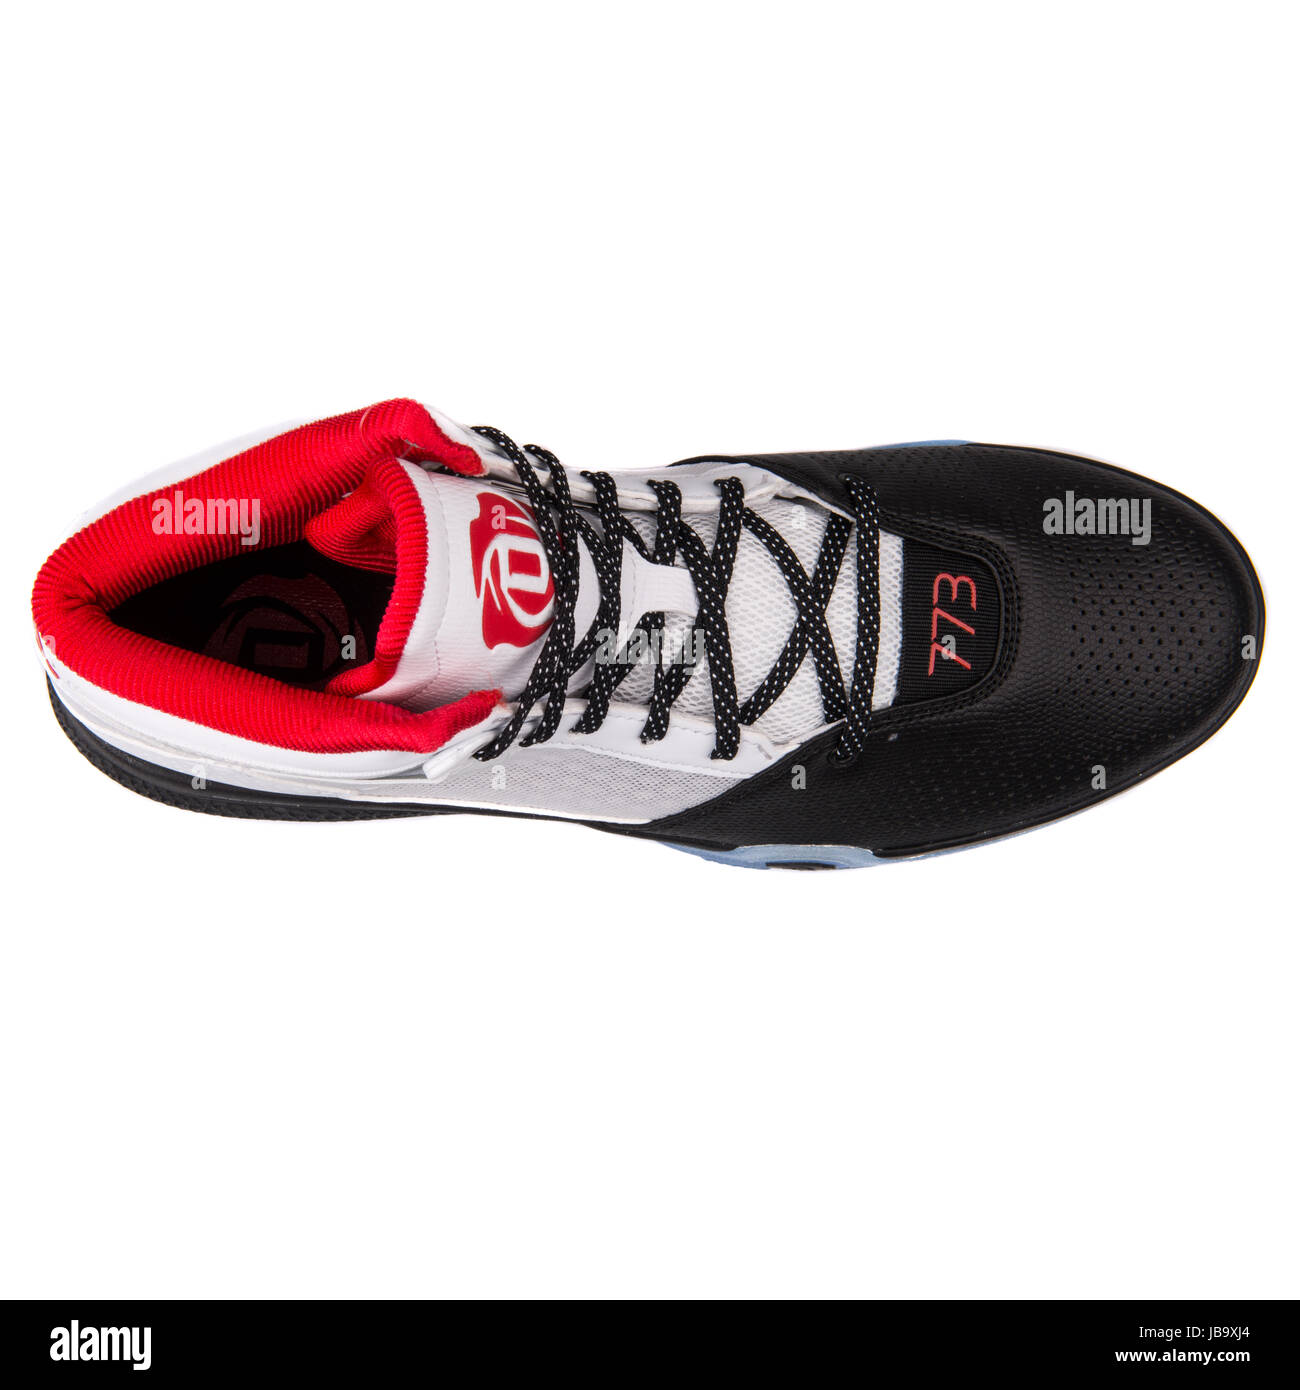 Adidas D Rose 773 IV weiß, schwarz und rot Herren Basketball-Schuhe -  D69433 Stockfotografie - Alamy